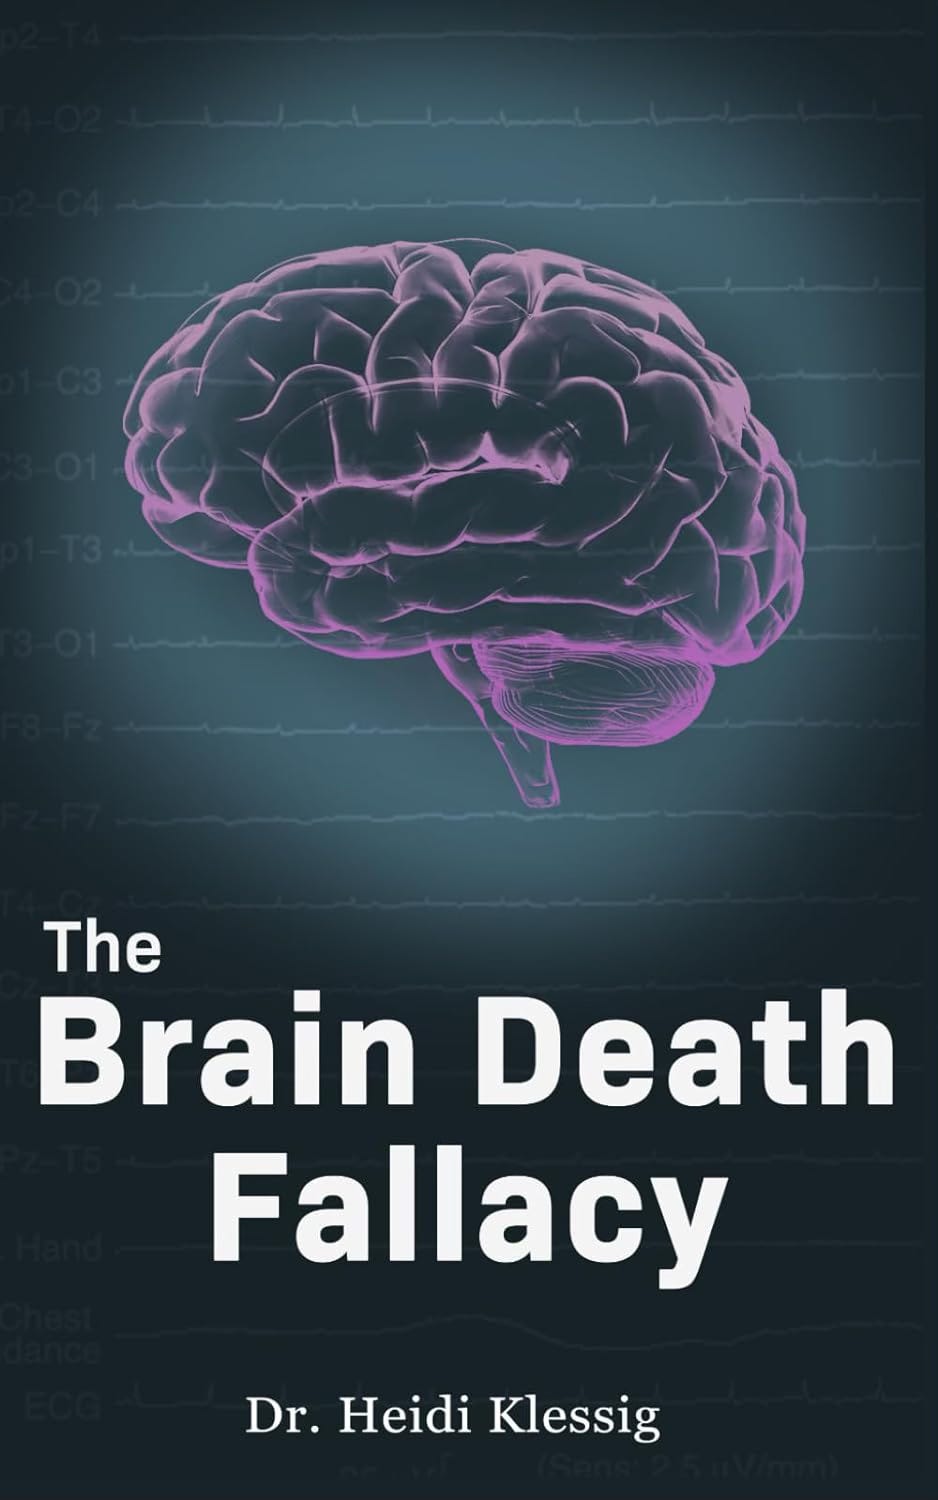 The Brain Death Fallacy